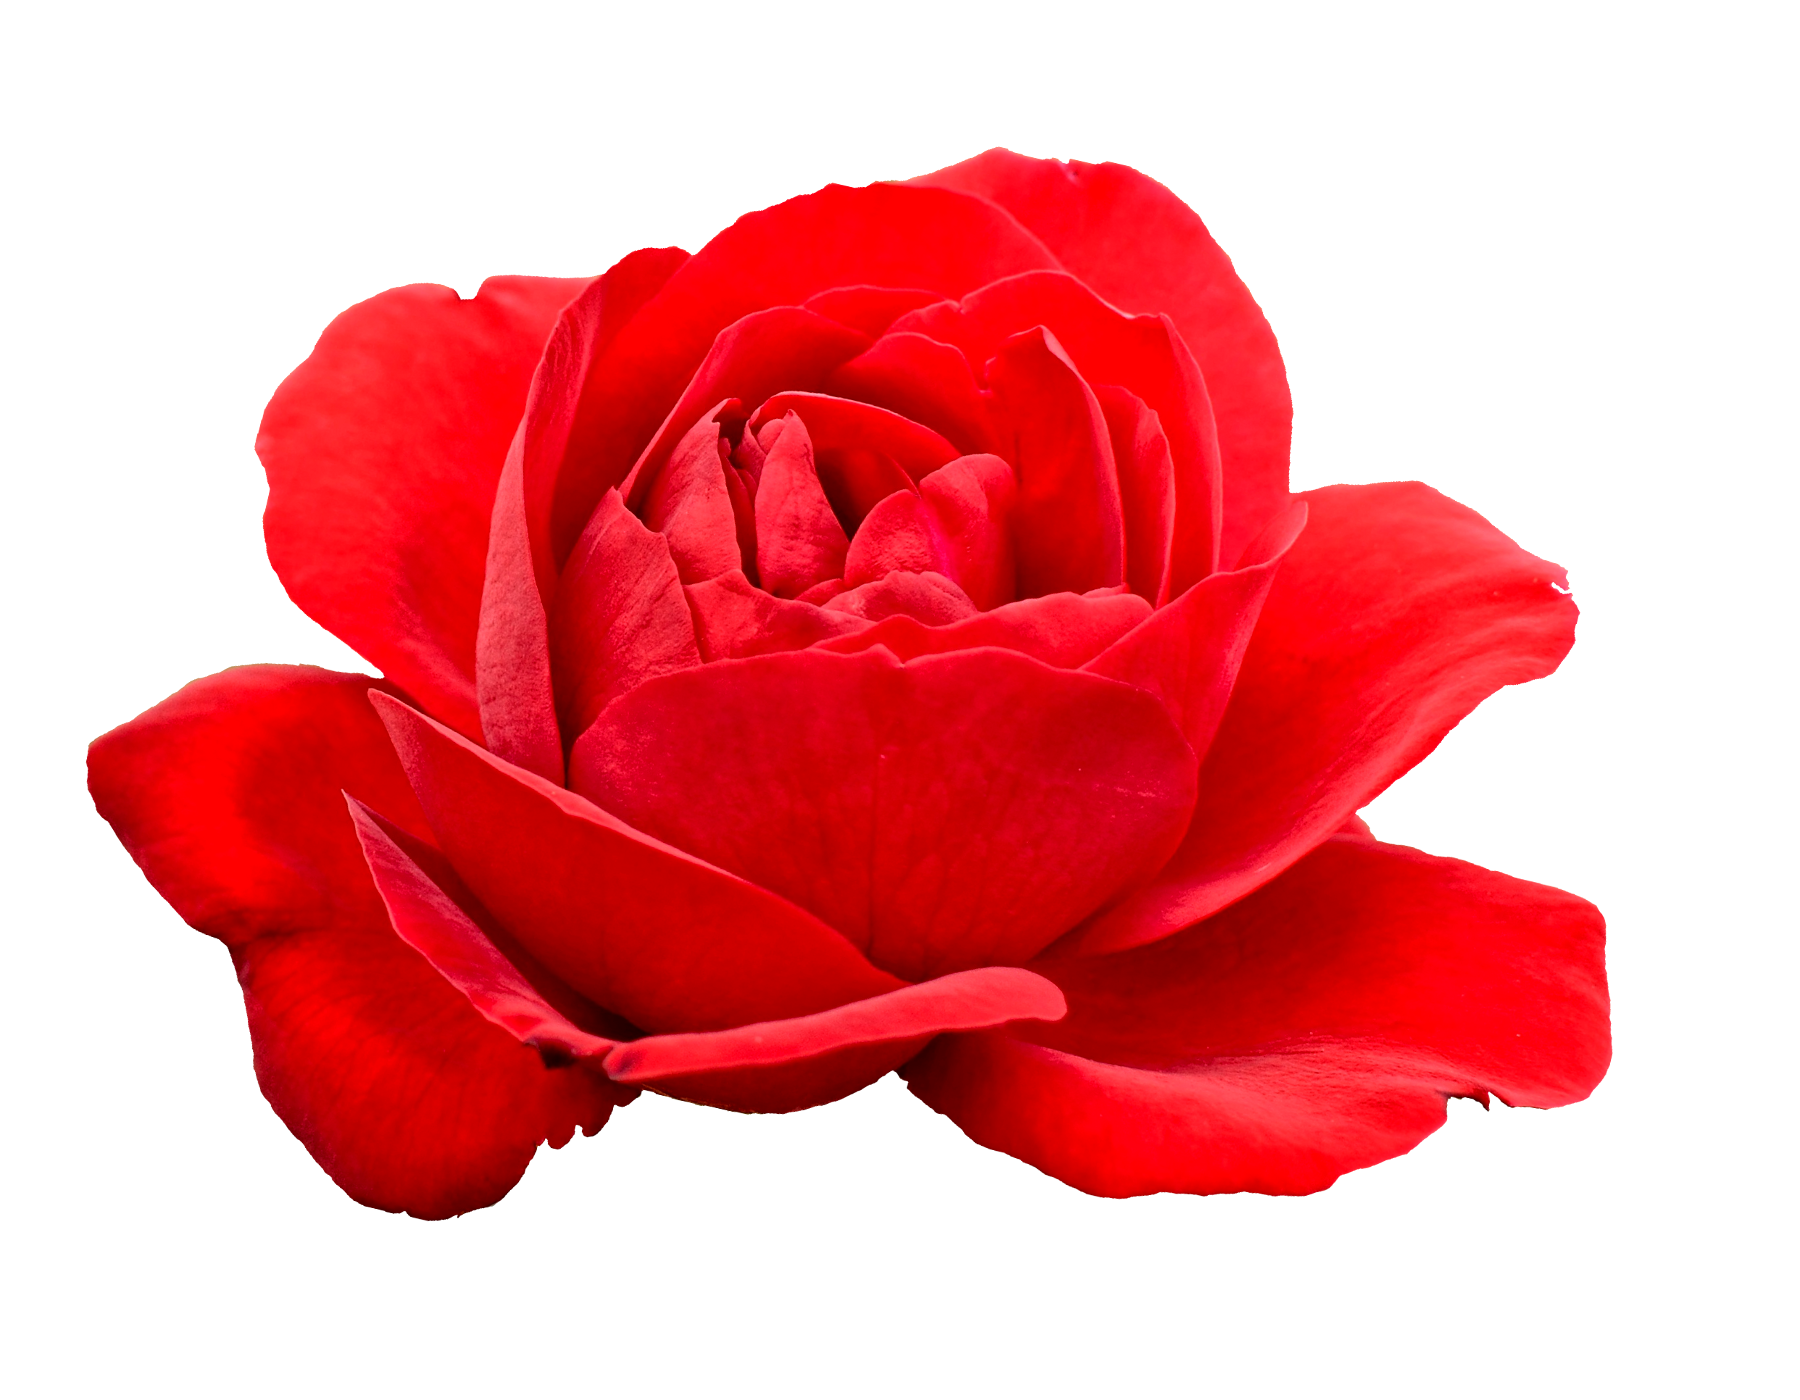 flower red rose image transparent #40646